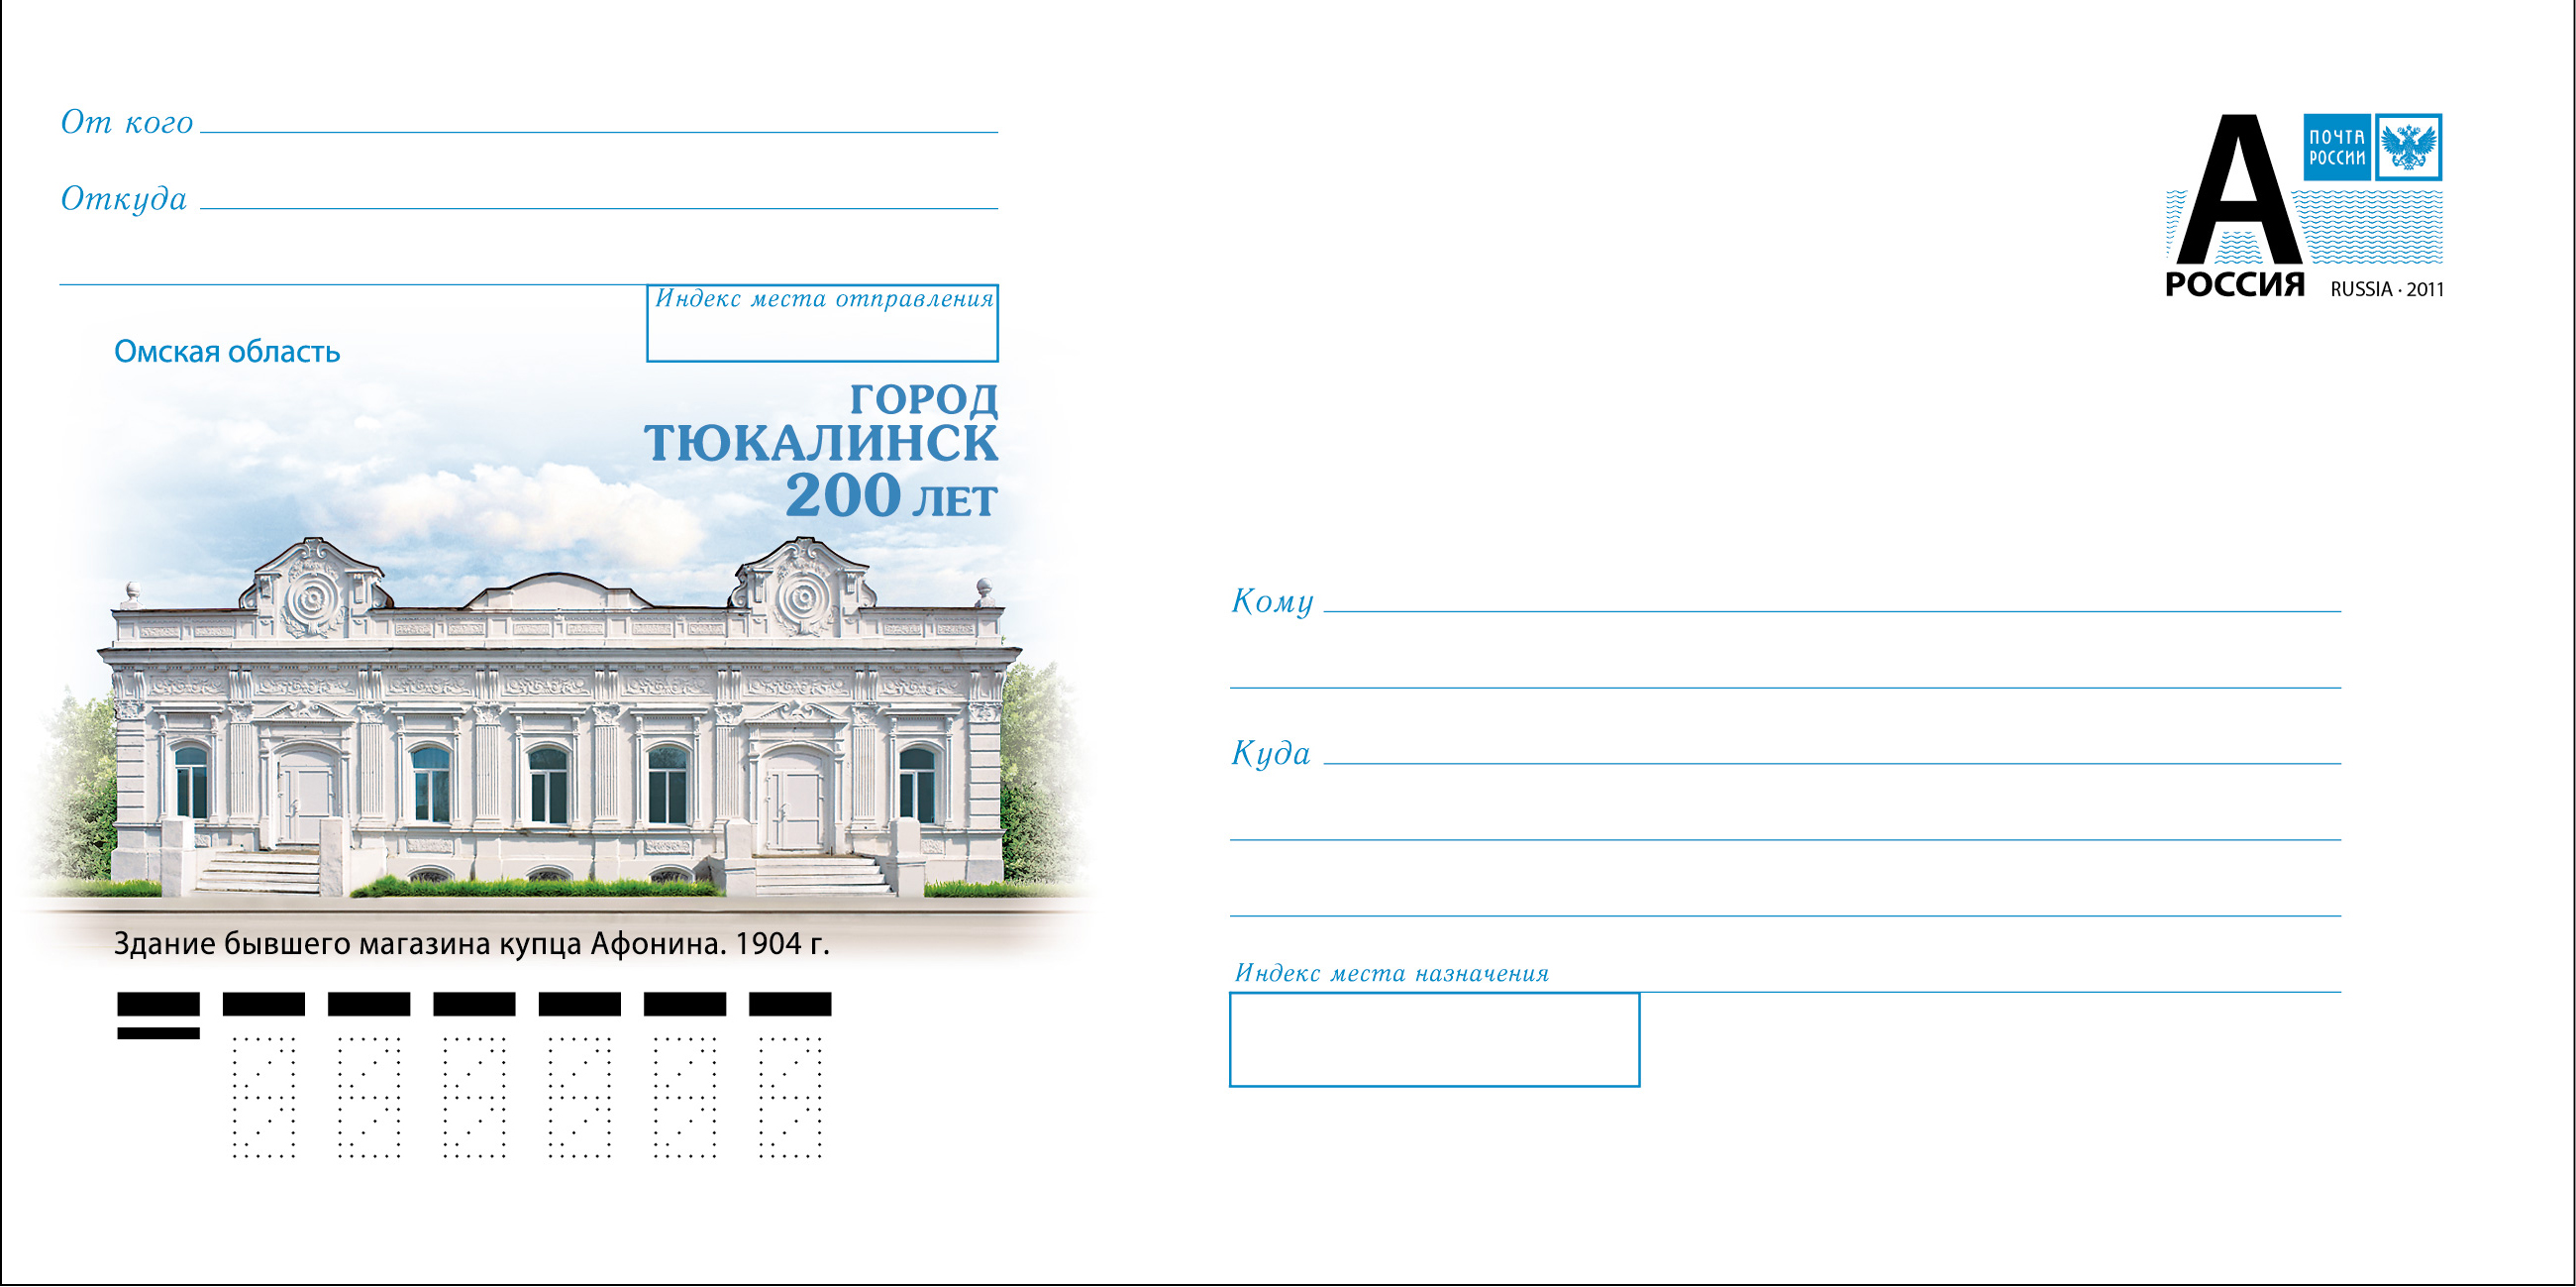 Почтовая марка Тюкалинск 